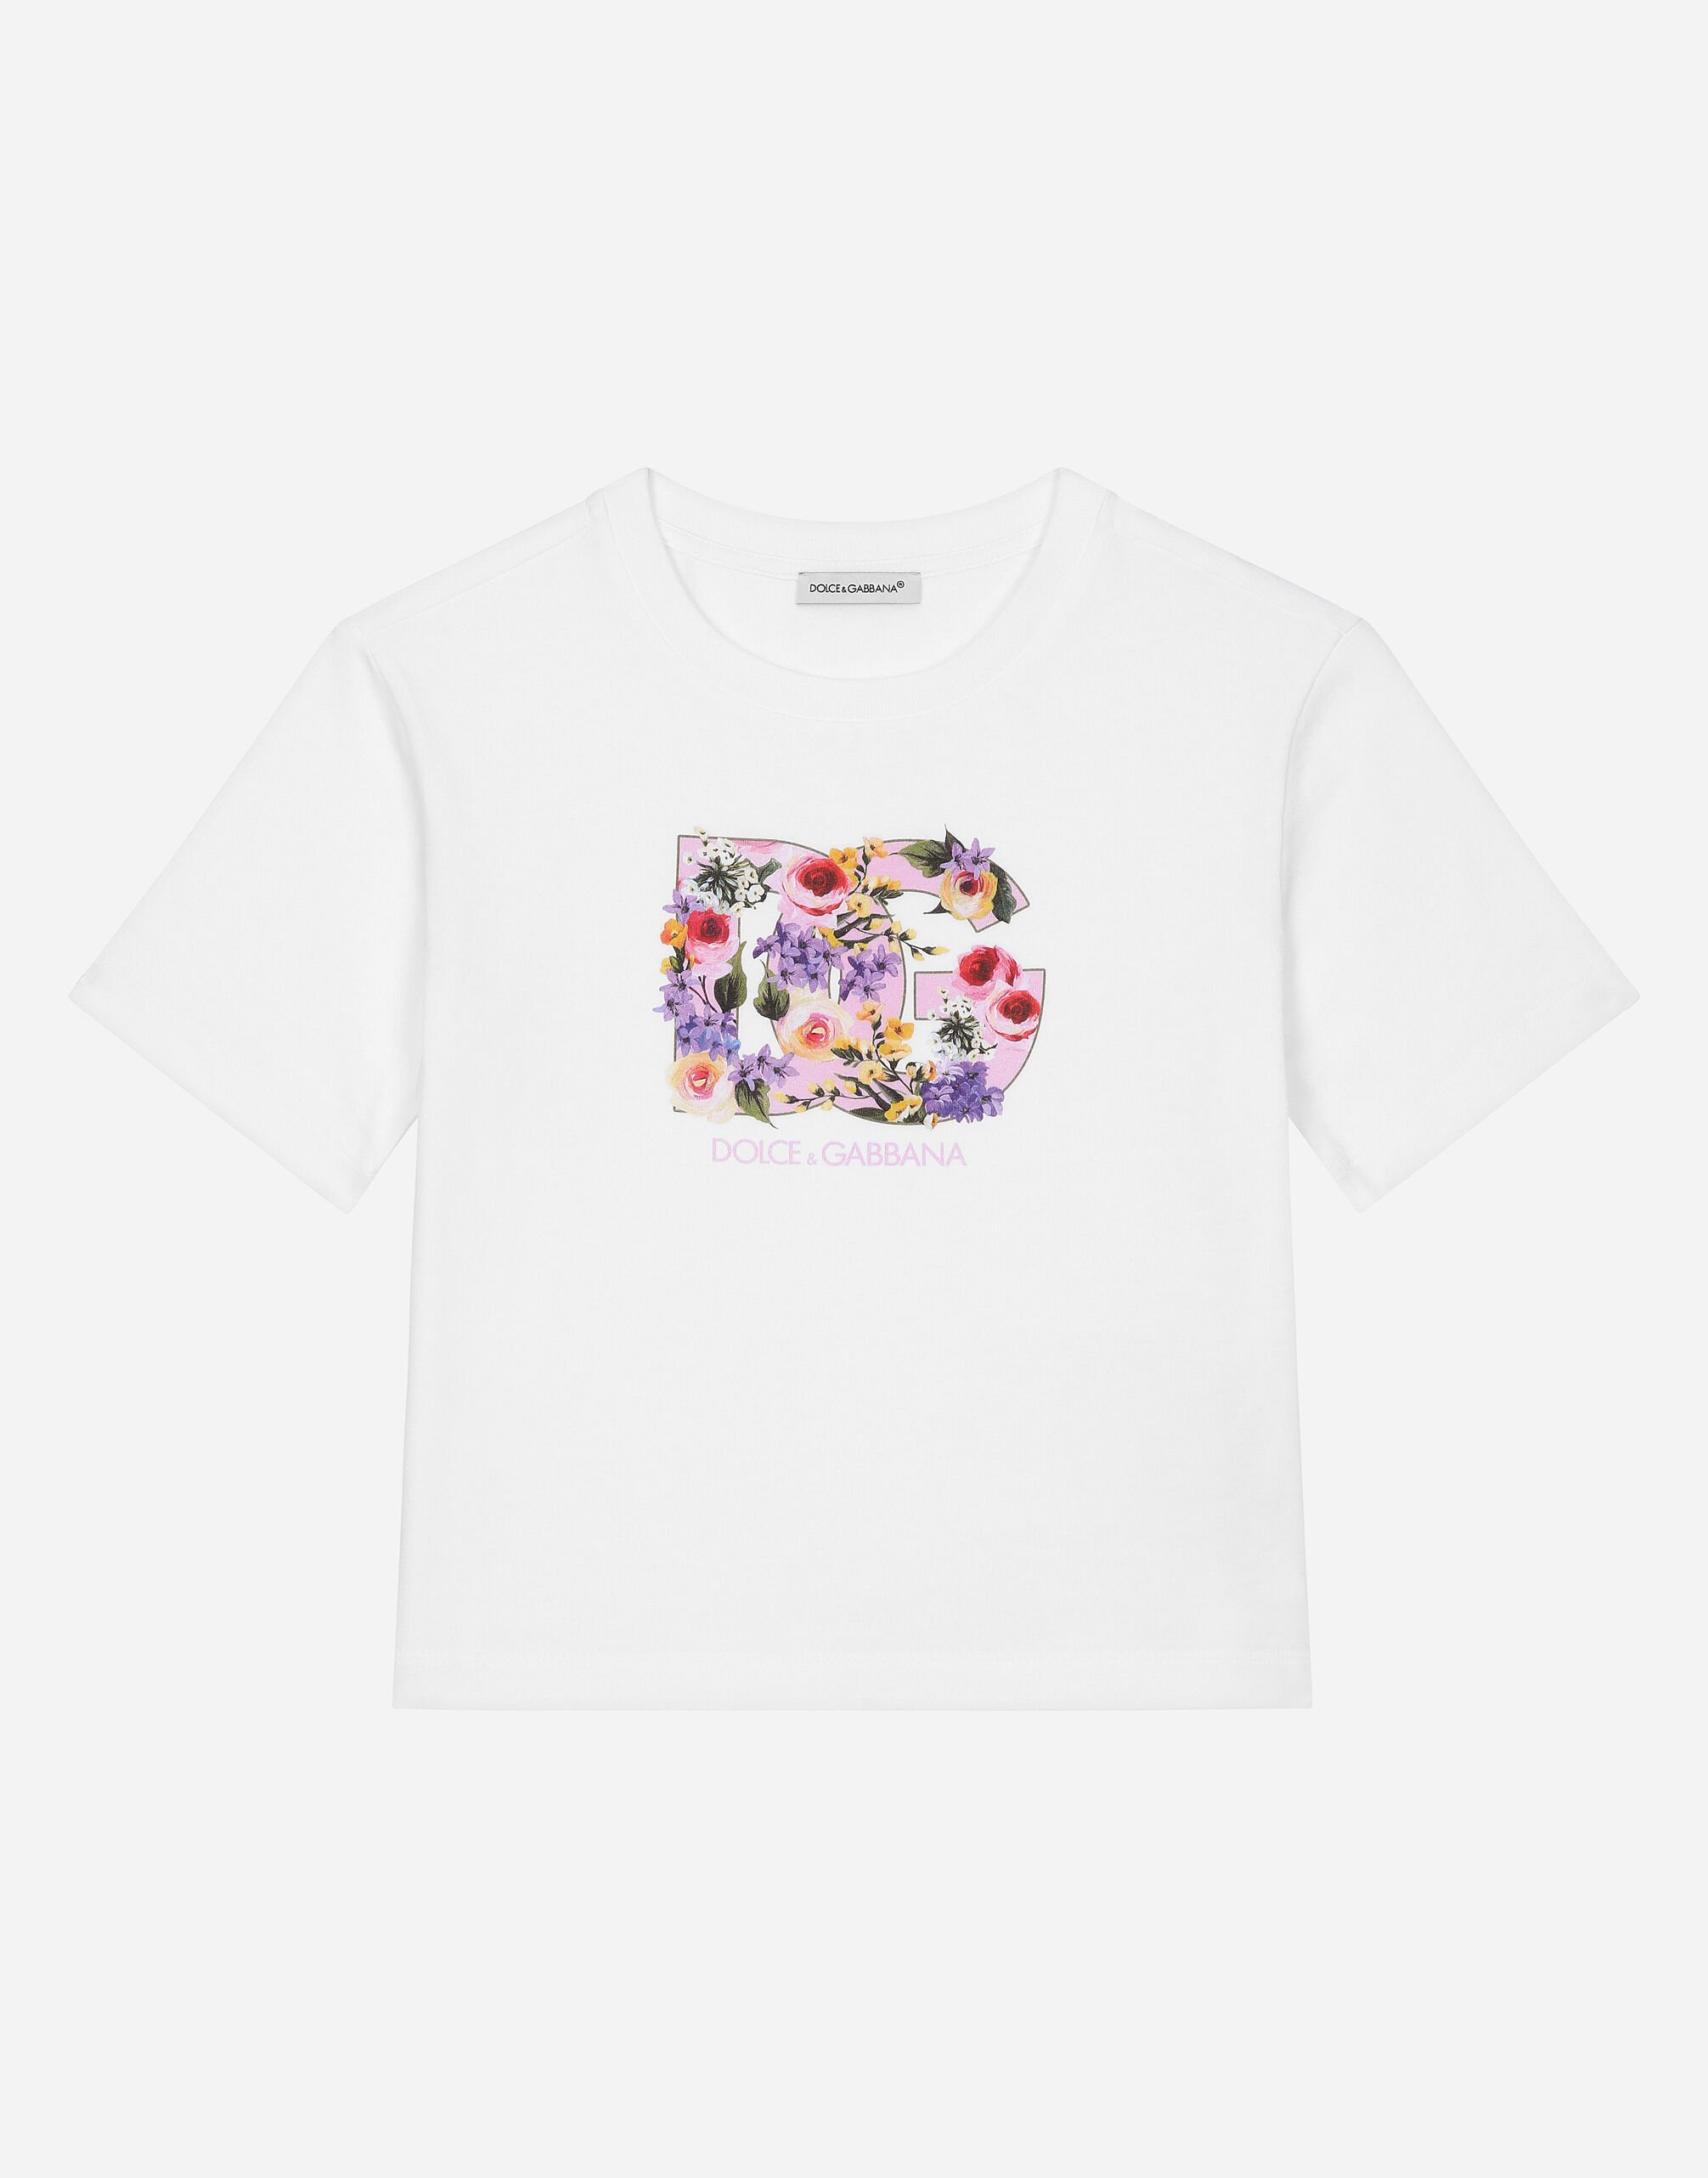 Dolce & Gabbana T-Shirt aus Jersey DG-Print Blumen Drucken L5JTMEG7K4F